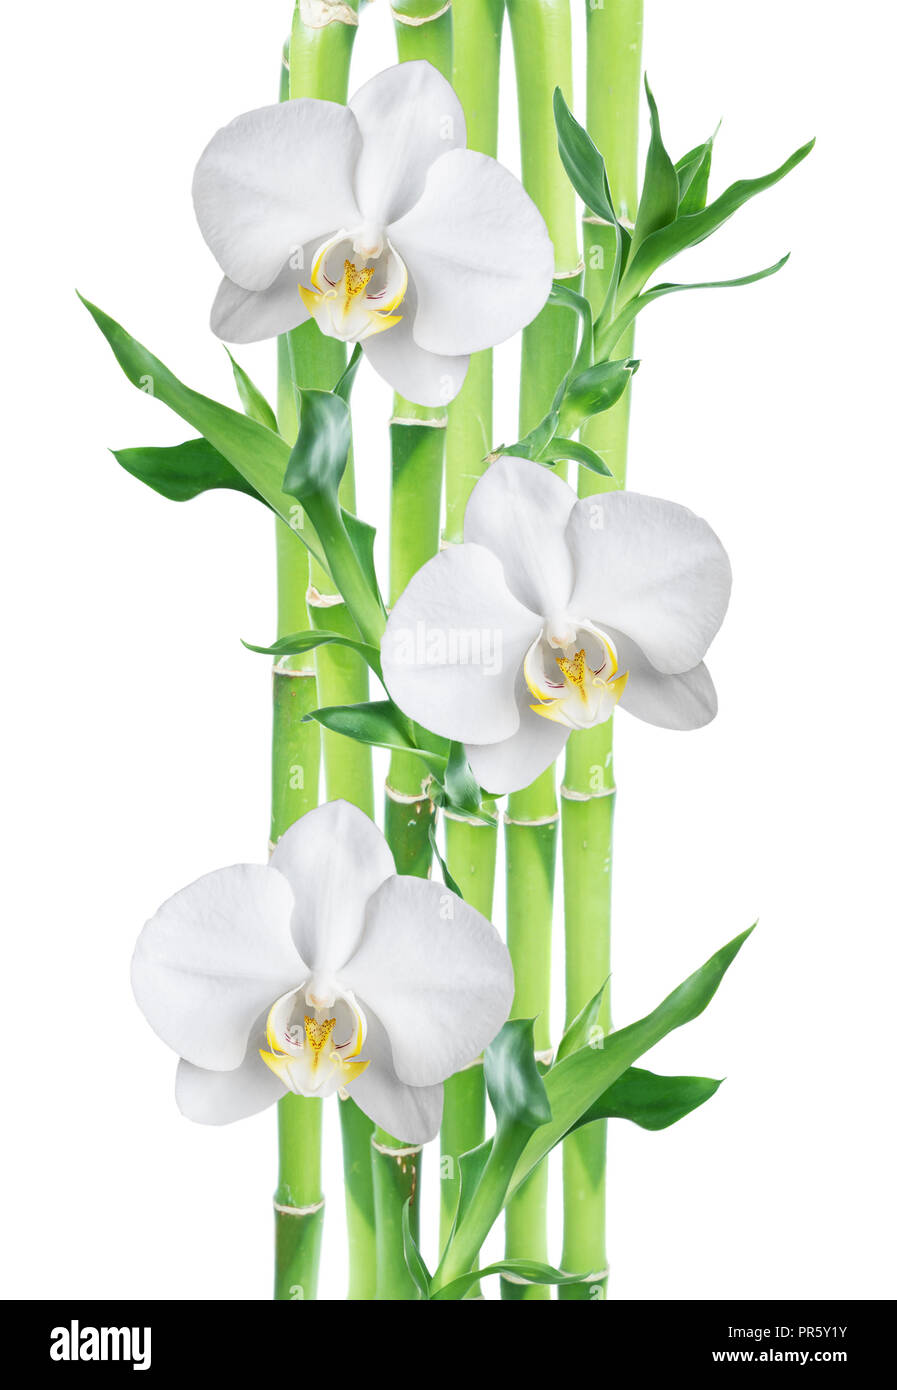 Plusieurs tiges de Lucky Bamboo (Dracaena Sanderiana) avec des feuilles vertes et trois fleurs orchidée blanche, isolé sur fond blanc Banque D'Images